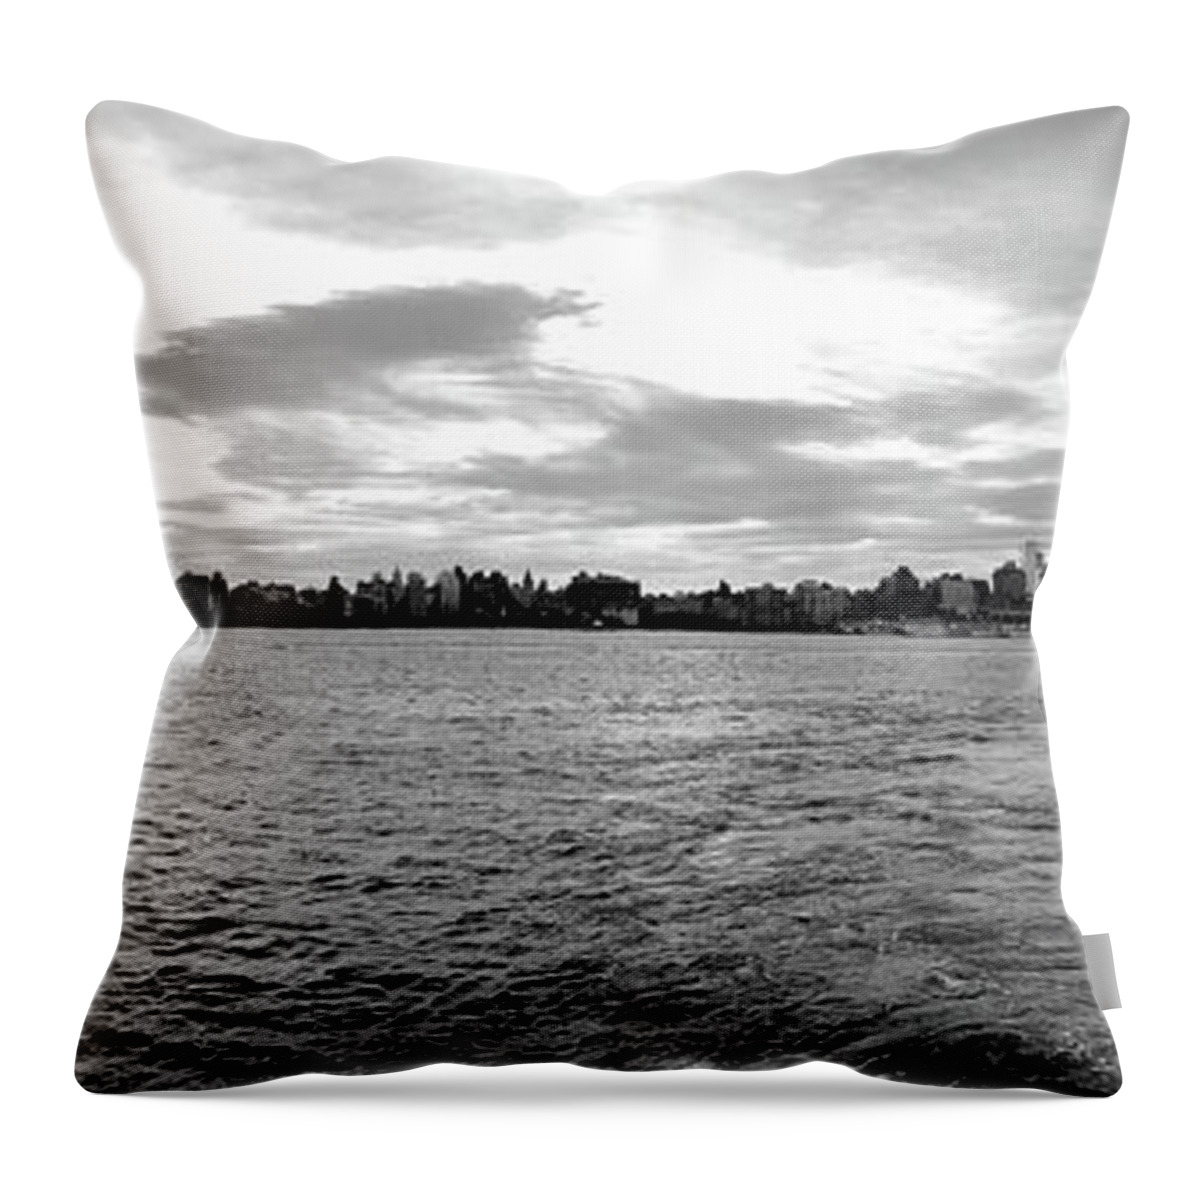 Manhattan Throw Pillow featuring the photograph Manhattan From Hoboken by Jim Feldman